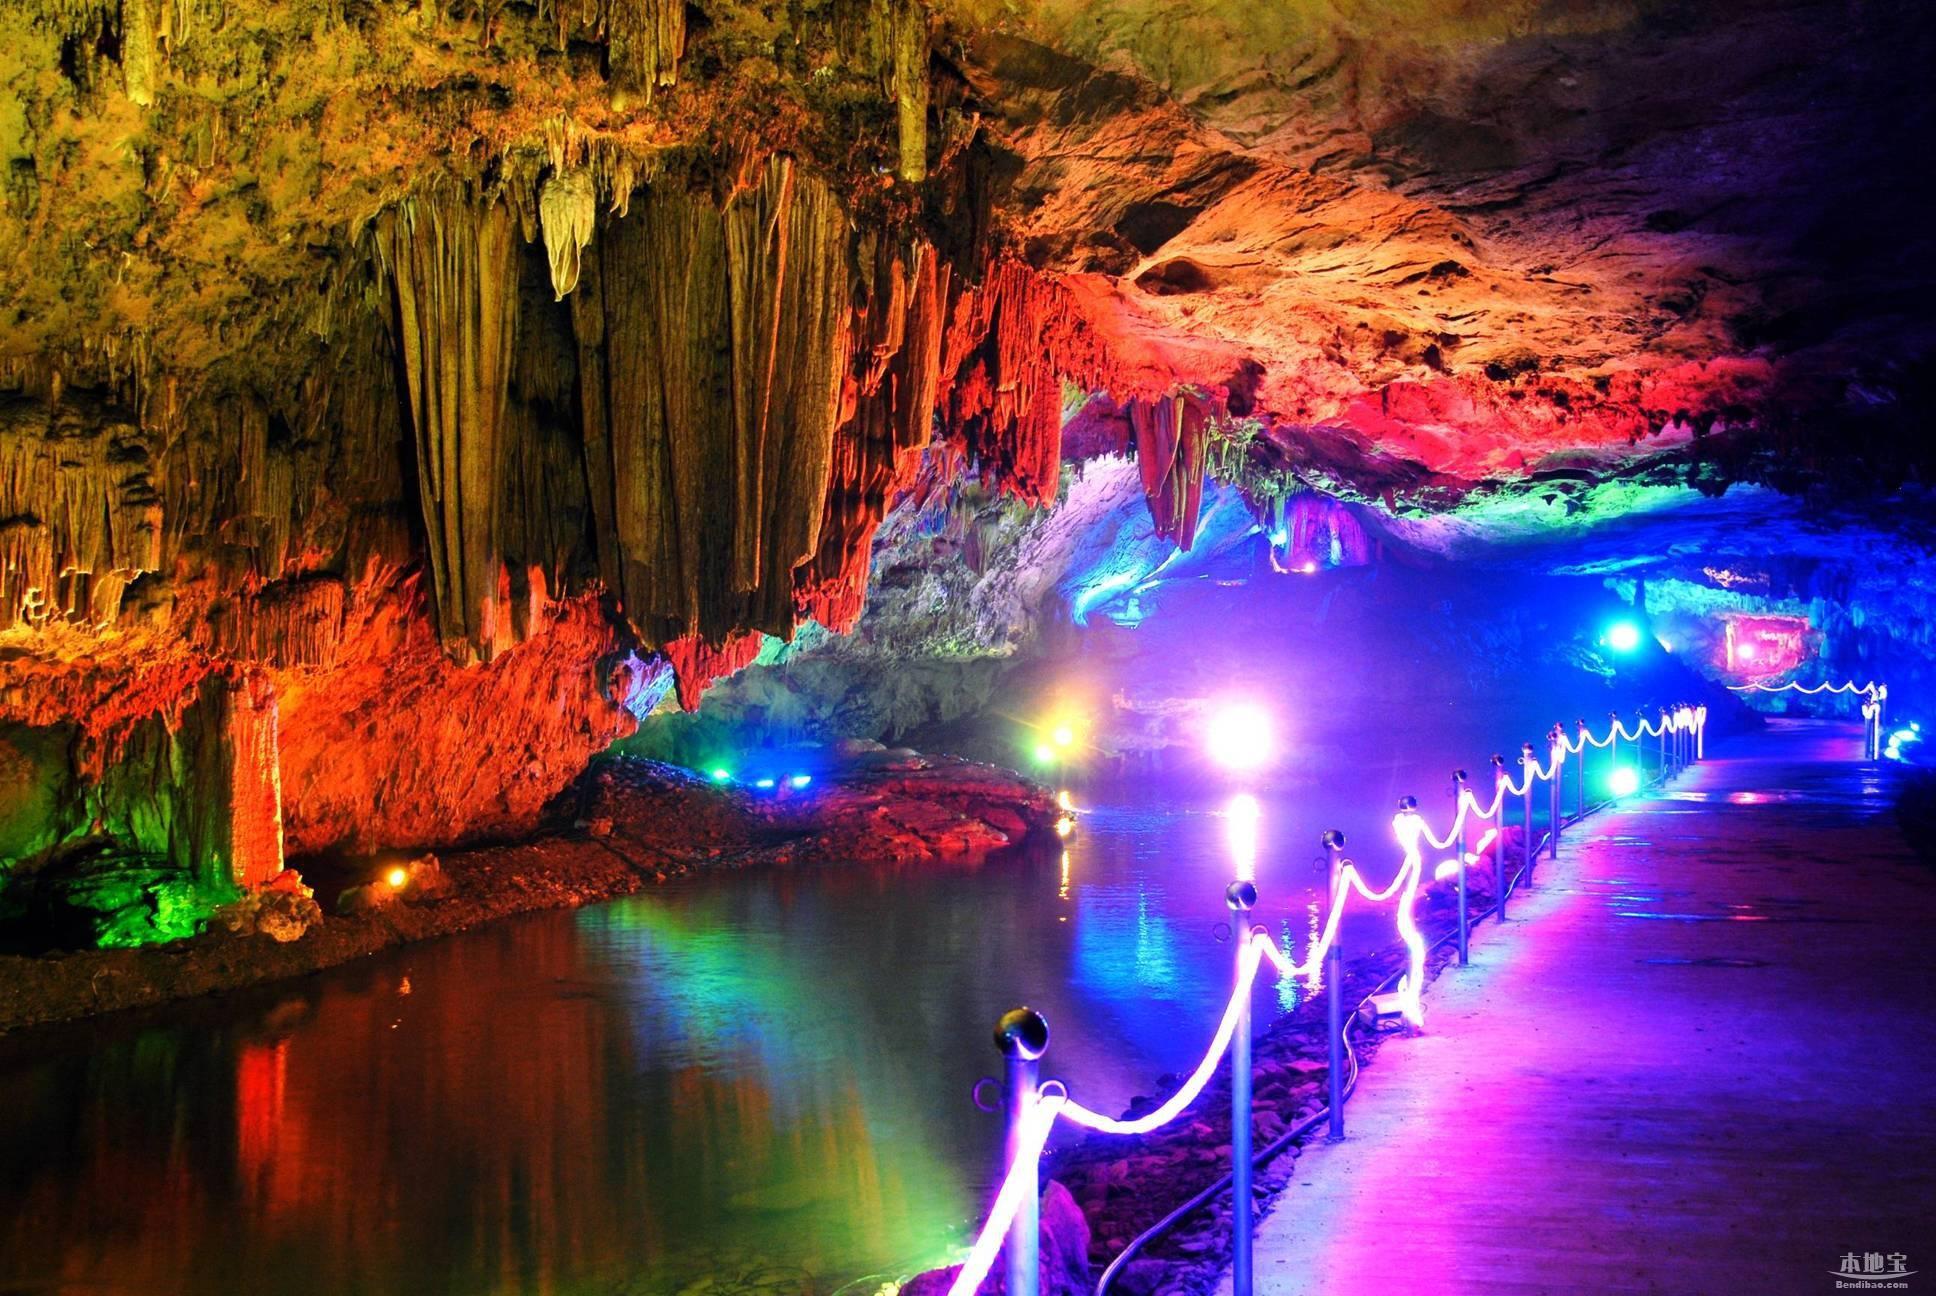 这里有全国最长,最美丽的水洞,以及多种喀斯特景观,被游客誉为大自然